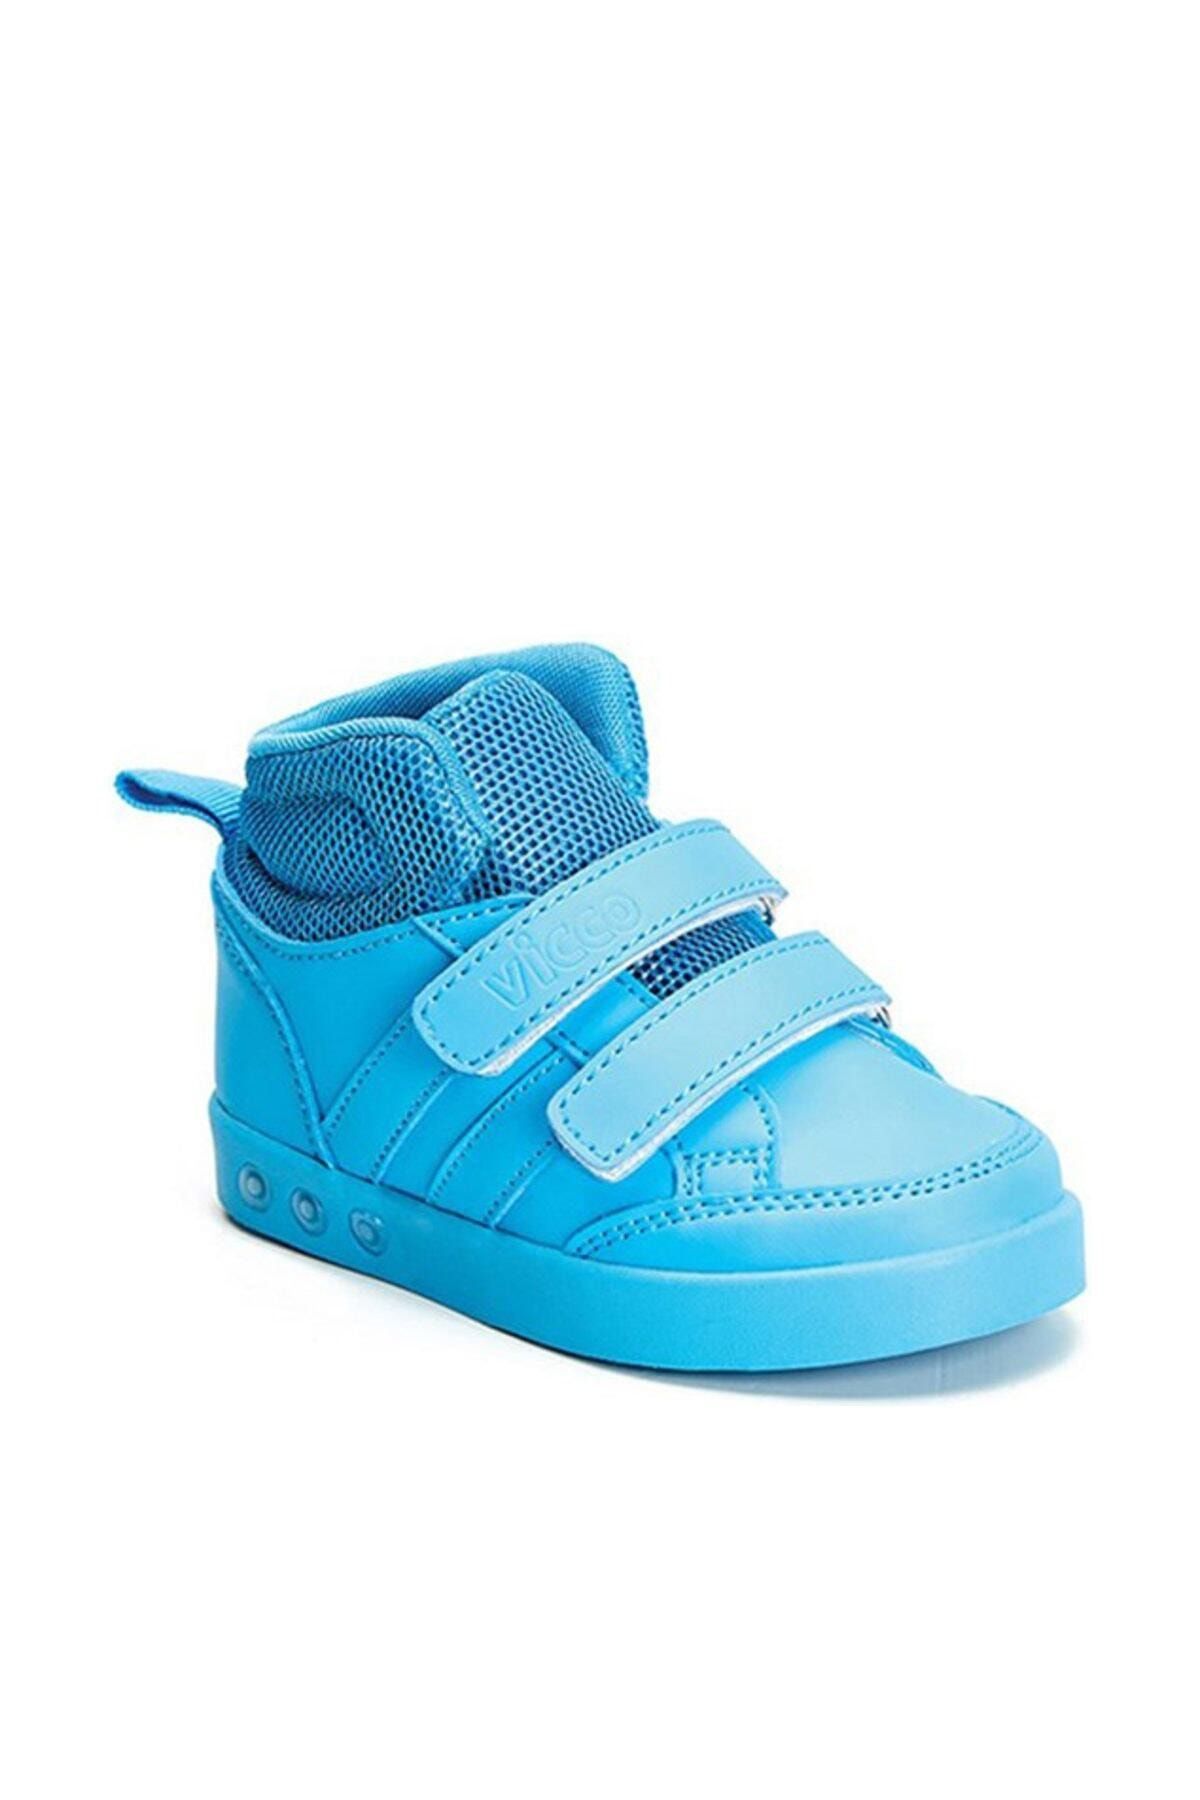 Vicco Oyo Çift Cırtlı Işıklı Spor Ayakkabı Mavi